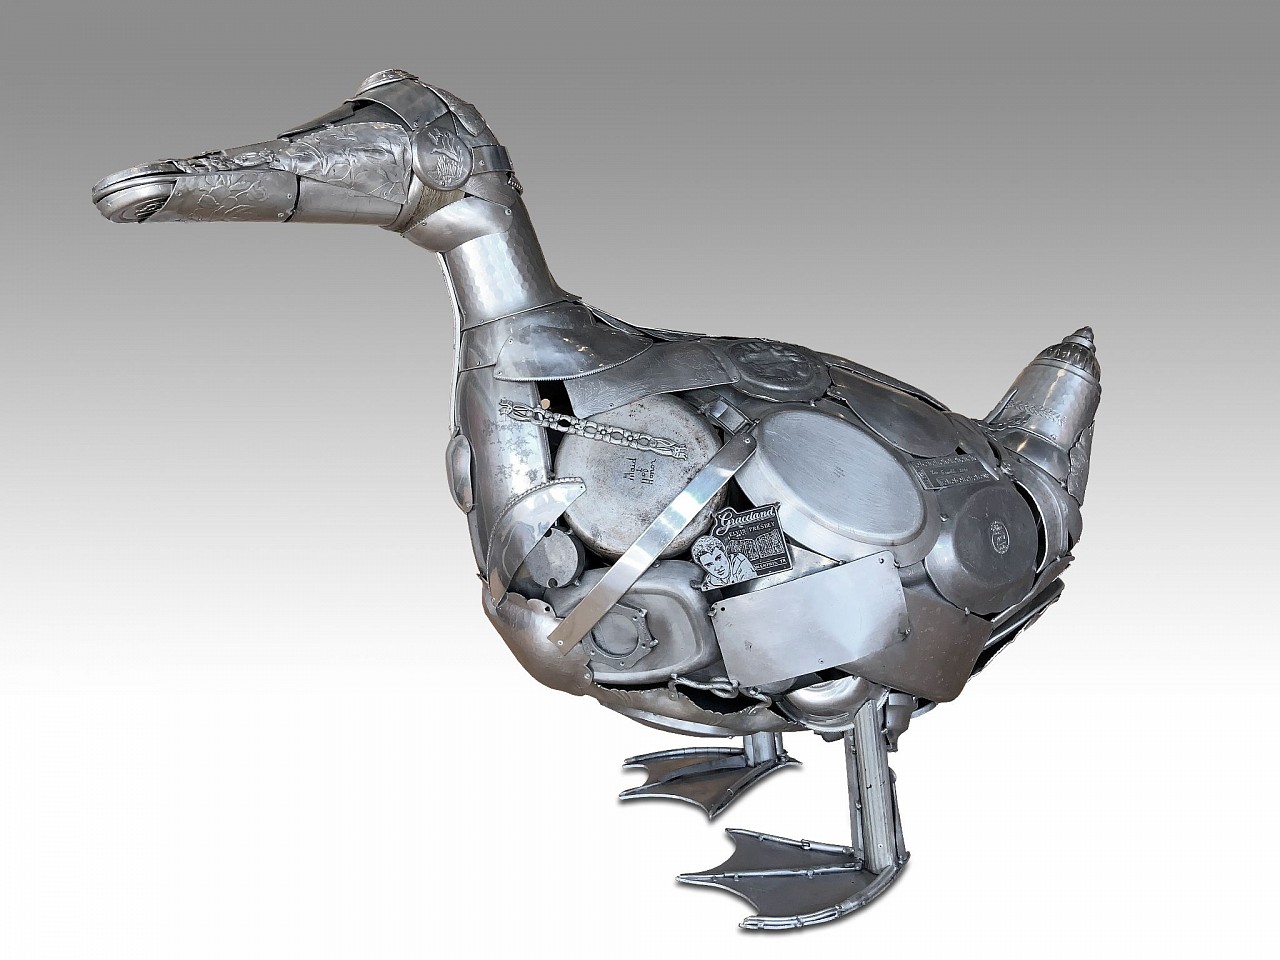 Leo Sewell, Duck, 2020
mixed media, 40 x 54 x 20 in. (101.6 x 137.2 x 50.8 cm)
LS201009